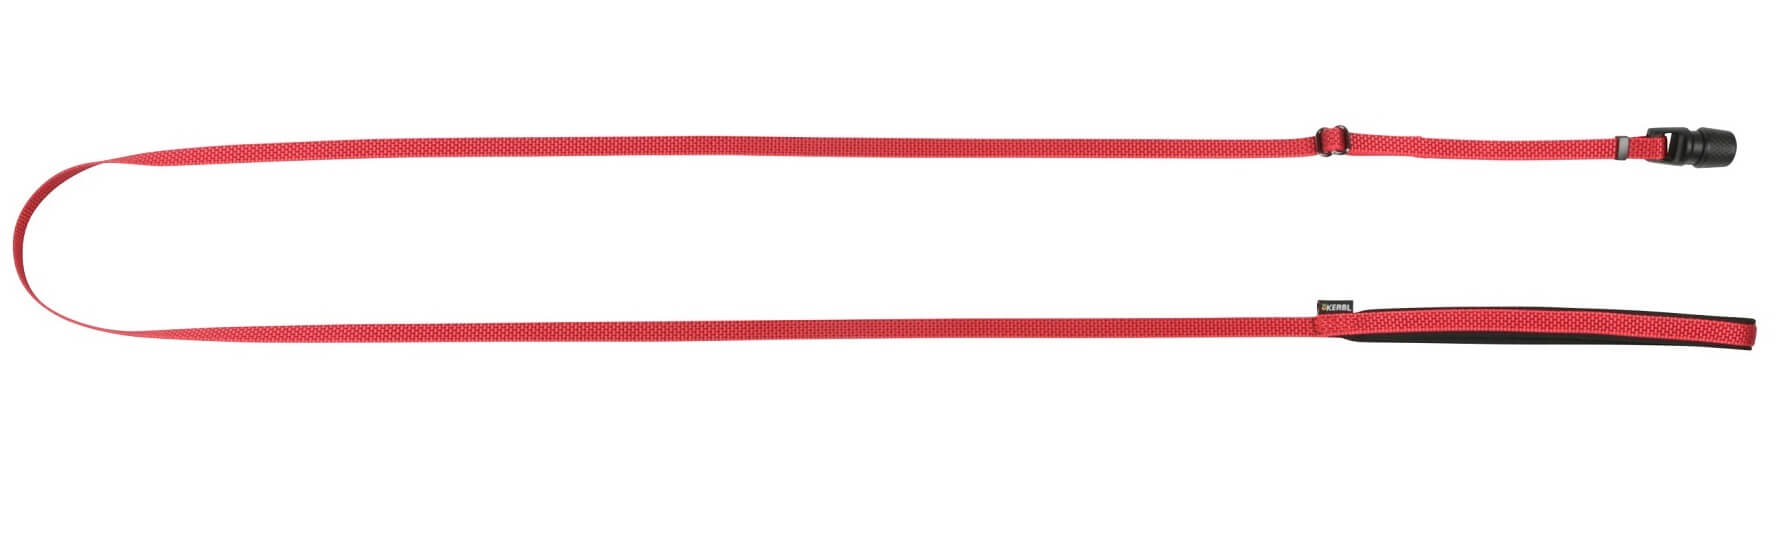 GoLeyGo 2.0 Set - Führleine Flat inkl. Halsband und Adapter-Pin